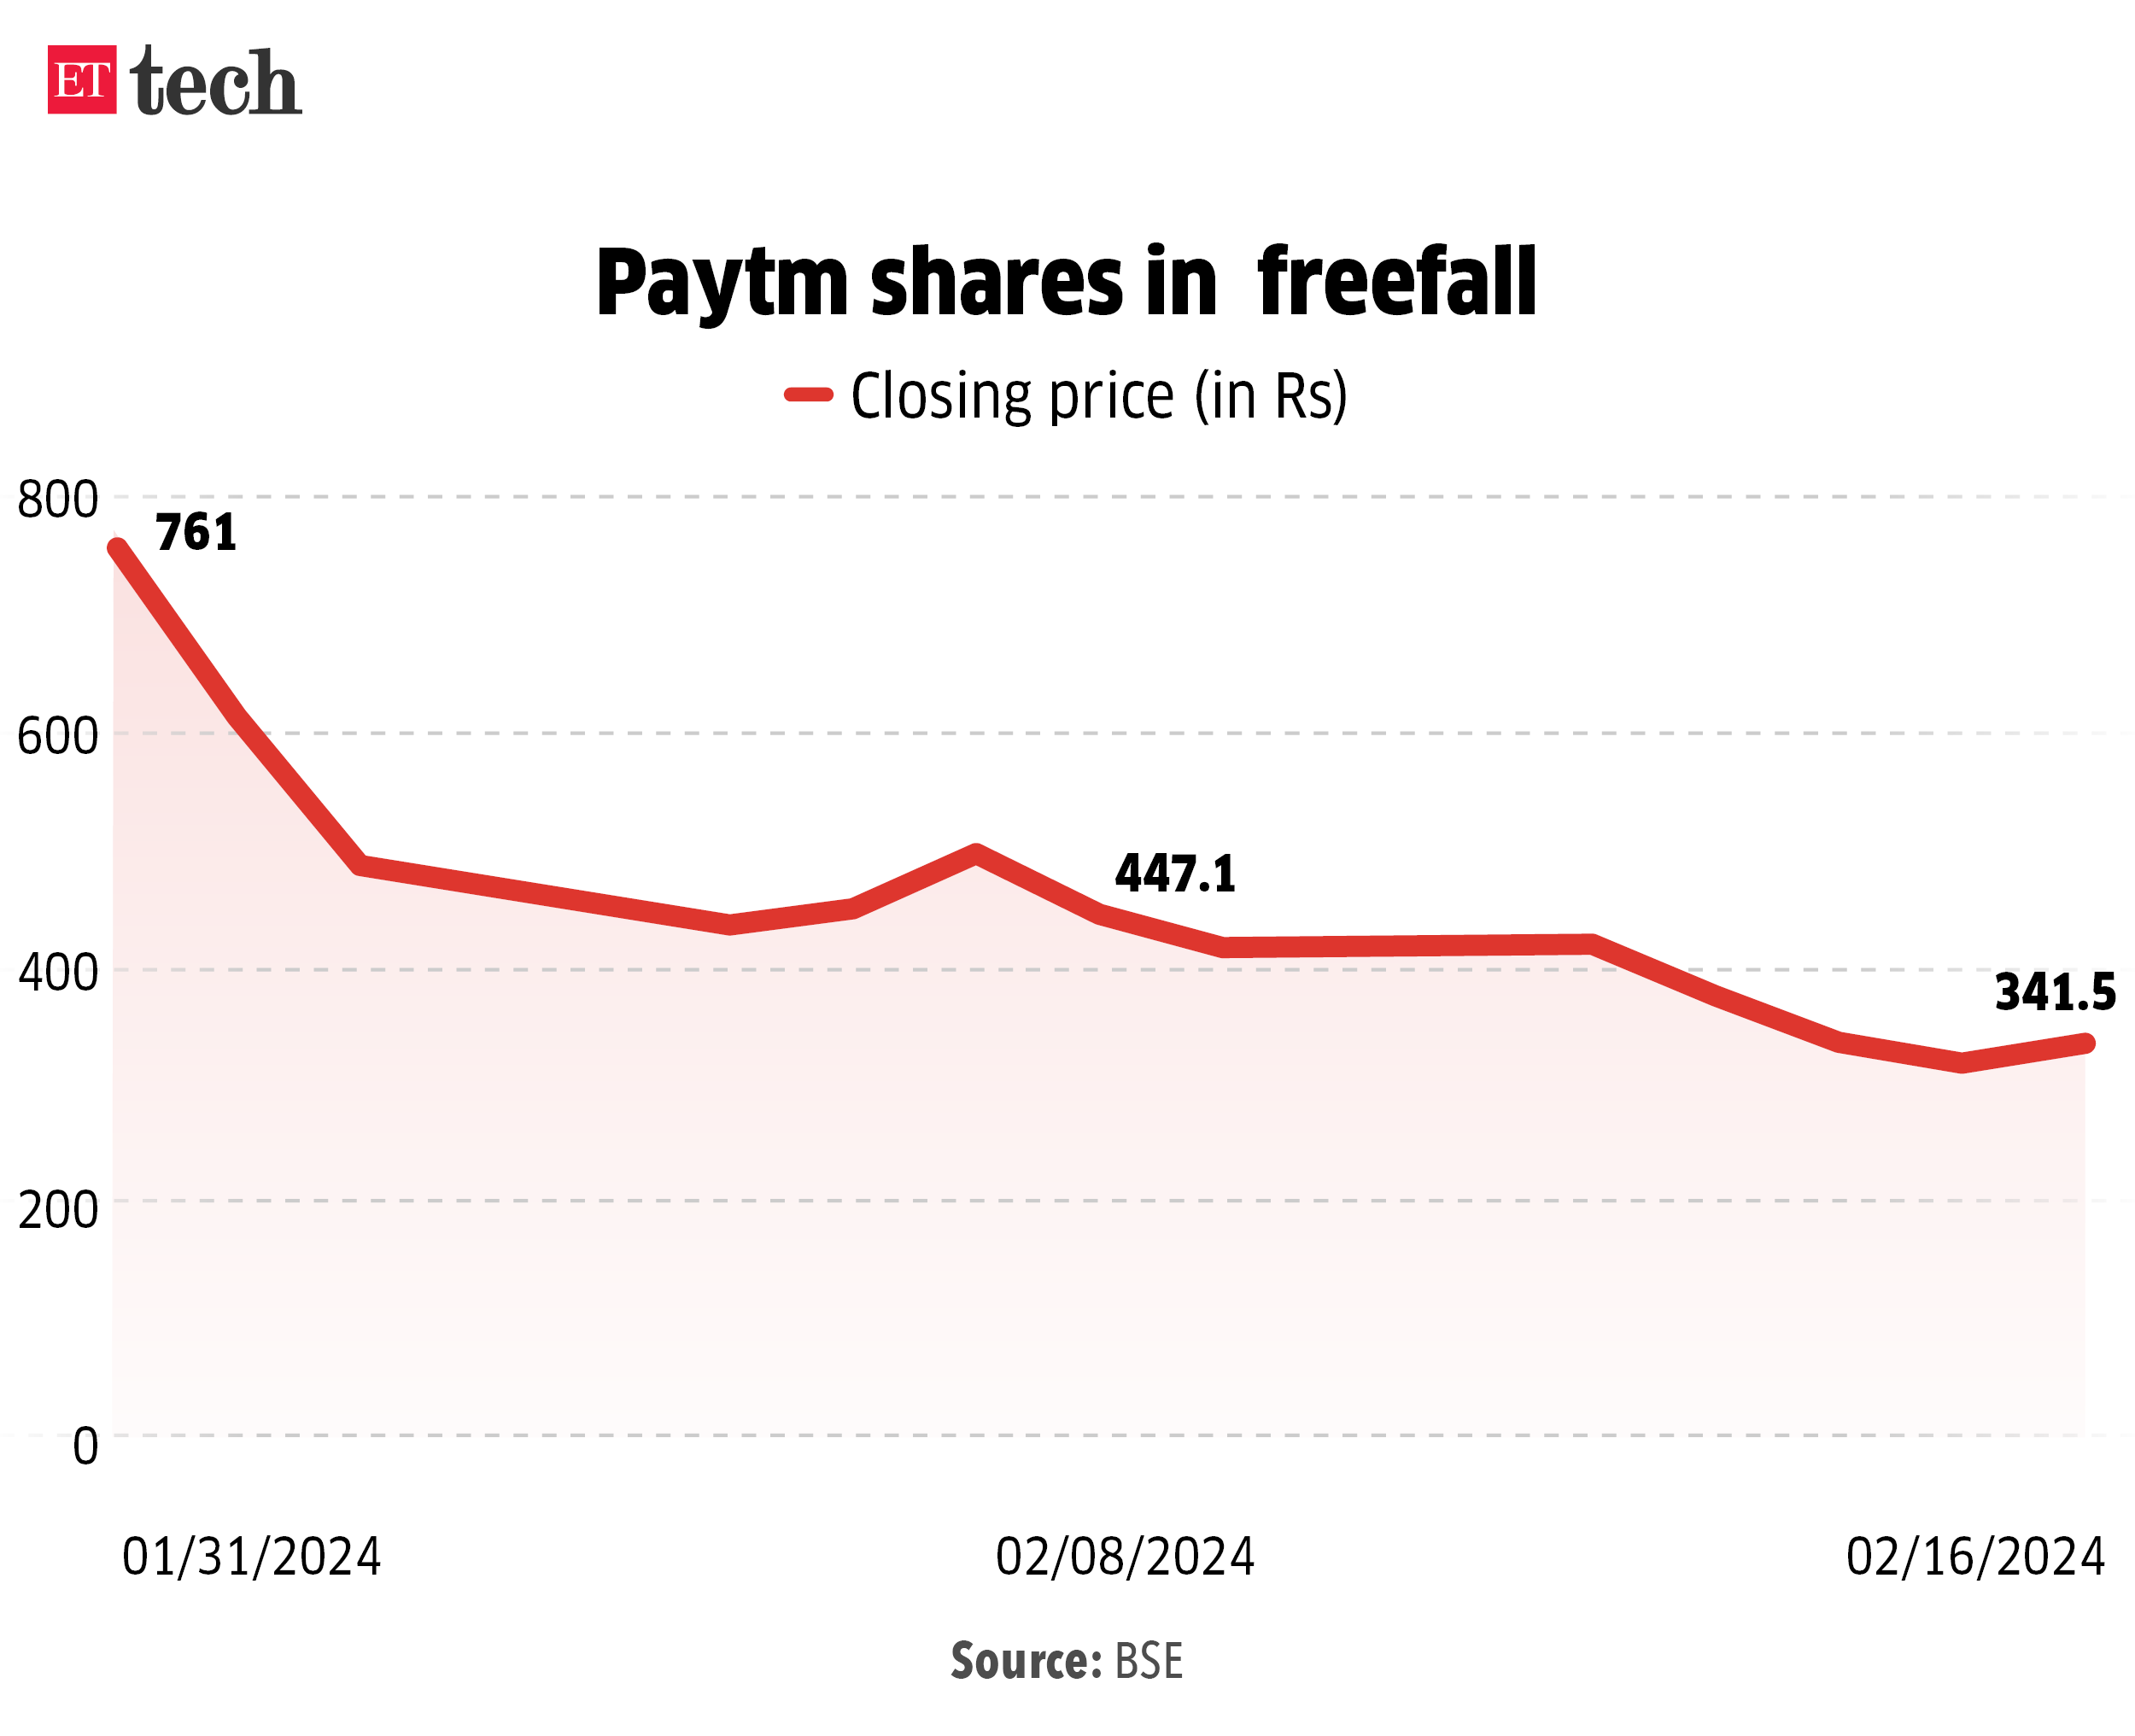 Paytm shares